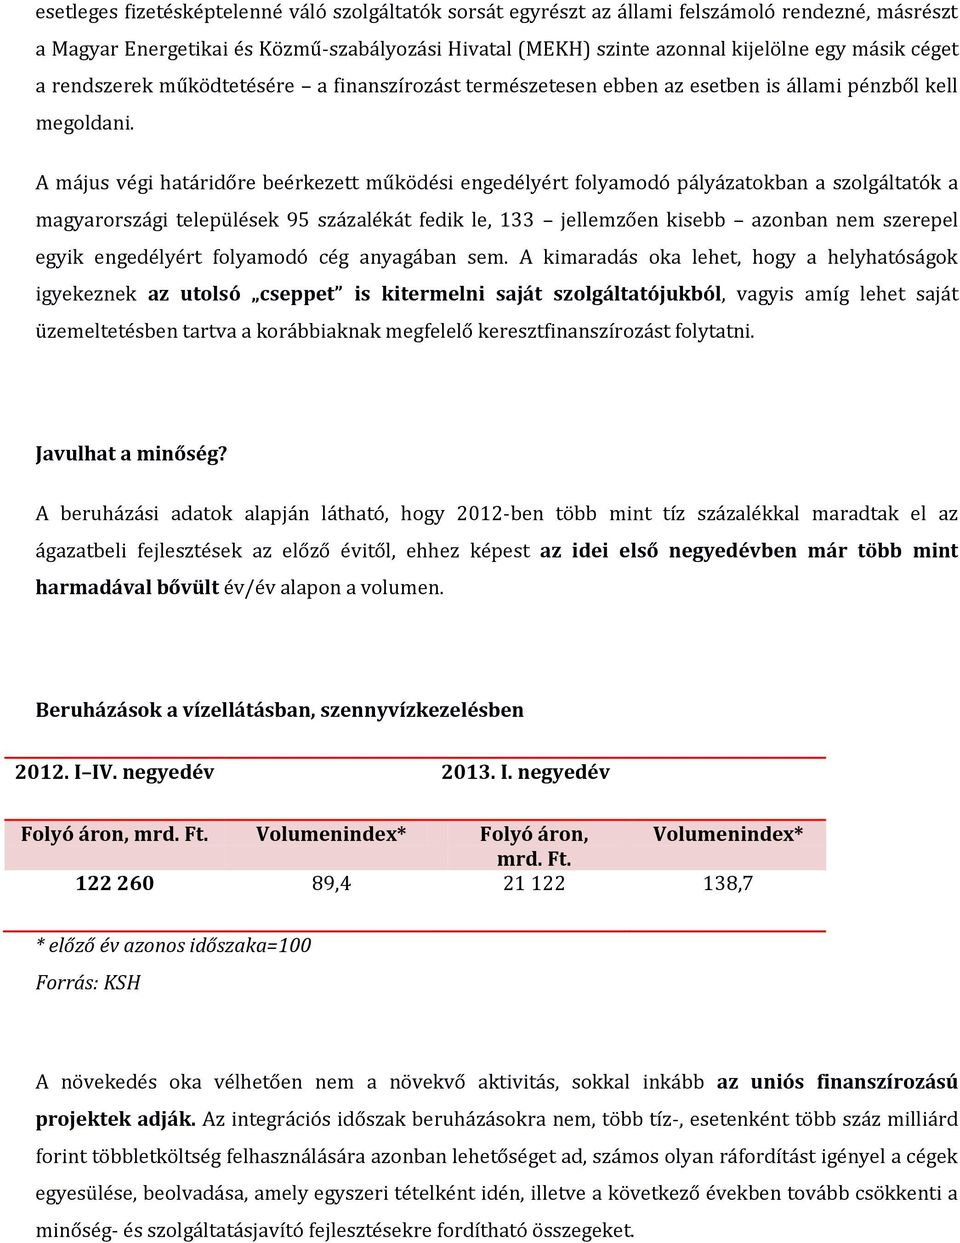 A május végi határidőre beérkezett működési engedélyért folyamodó pályázatokban a szolgáltatók a magyarországi települések 95 százalékát fedik le, 133 jellemzően kisebb azonban nem szerepel egyik